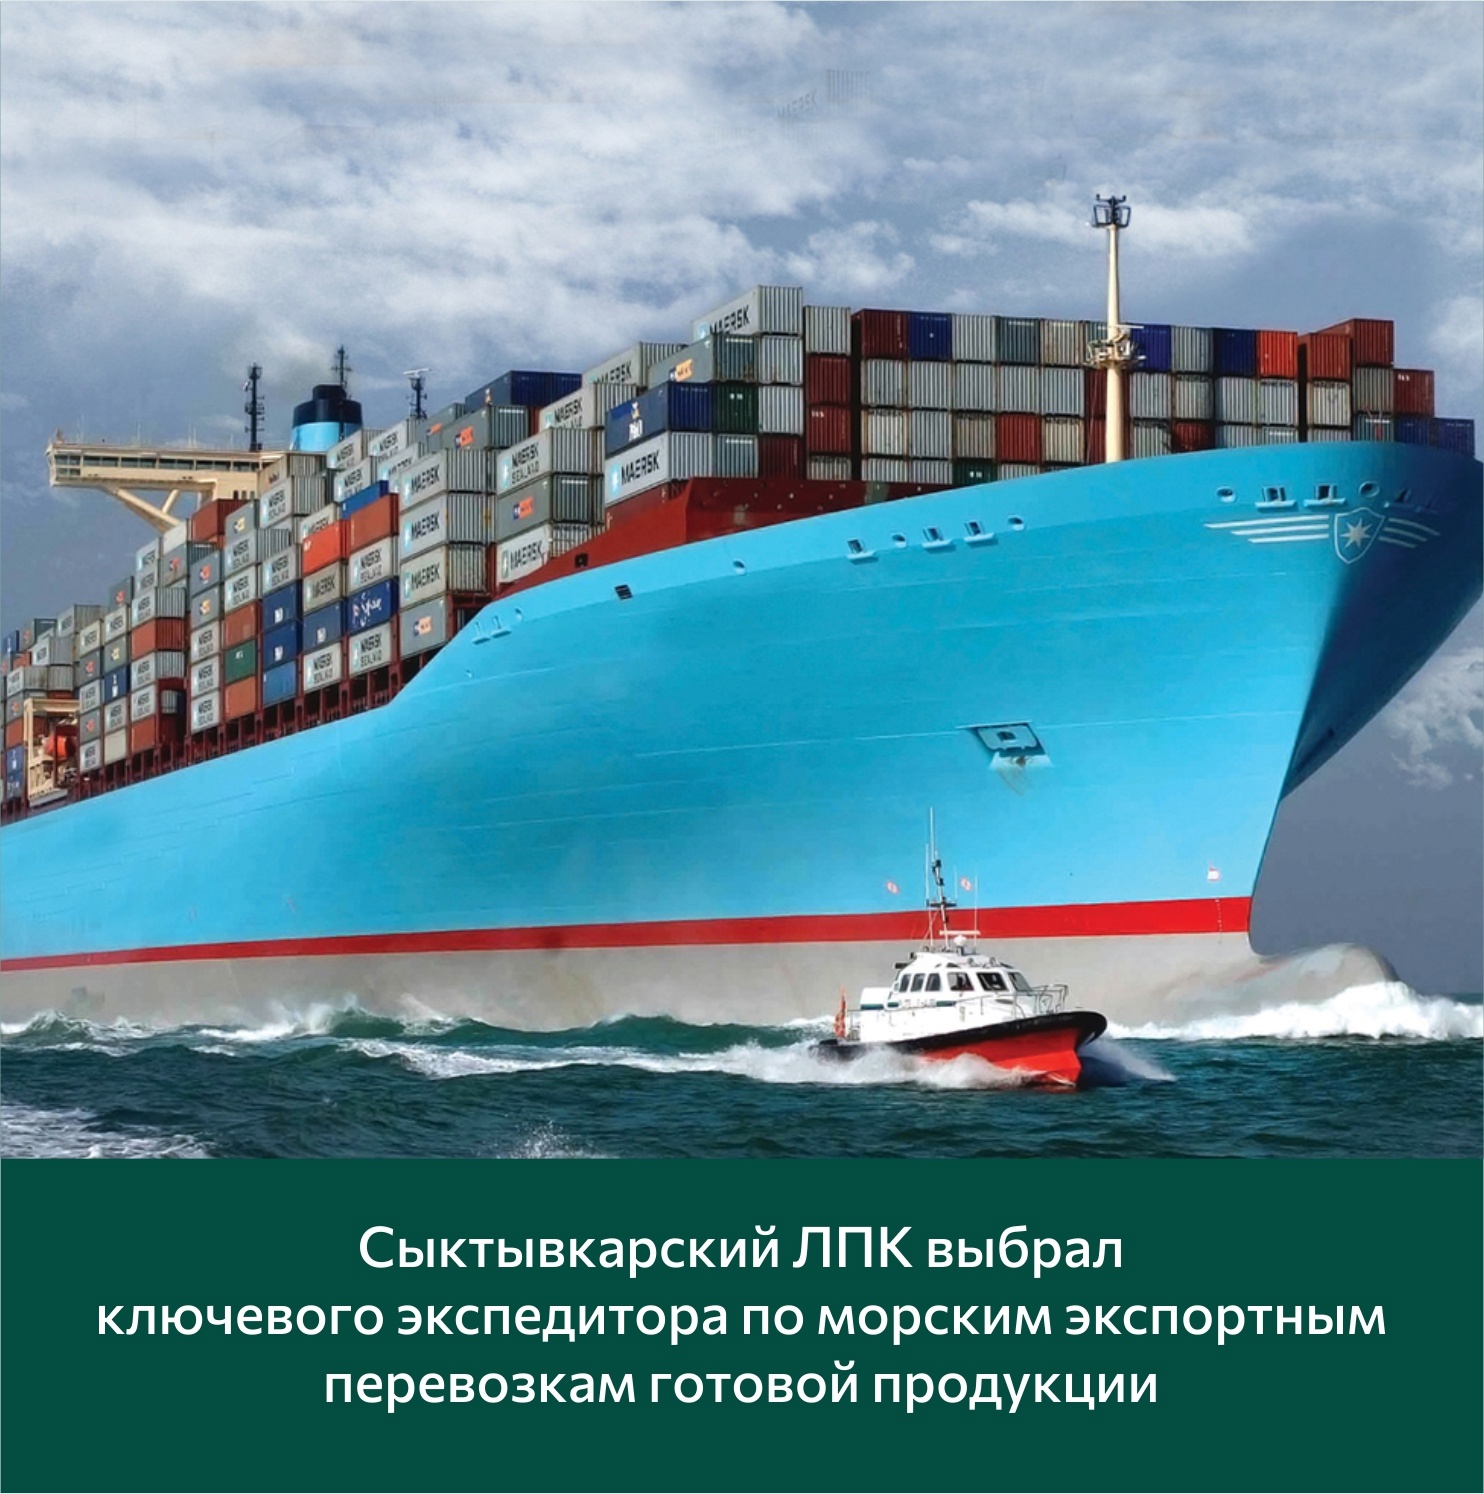 СЛПК заключил договор с ООО "Модуль" но перевозку готовой продукции на экспорт